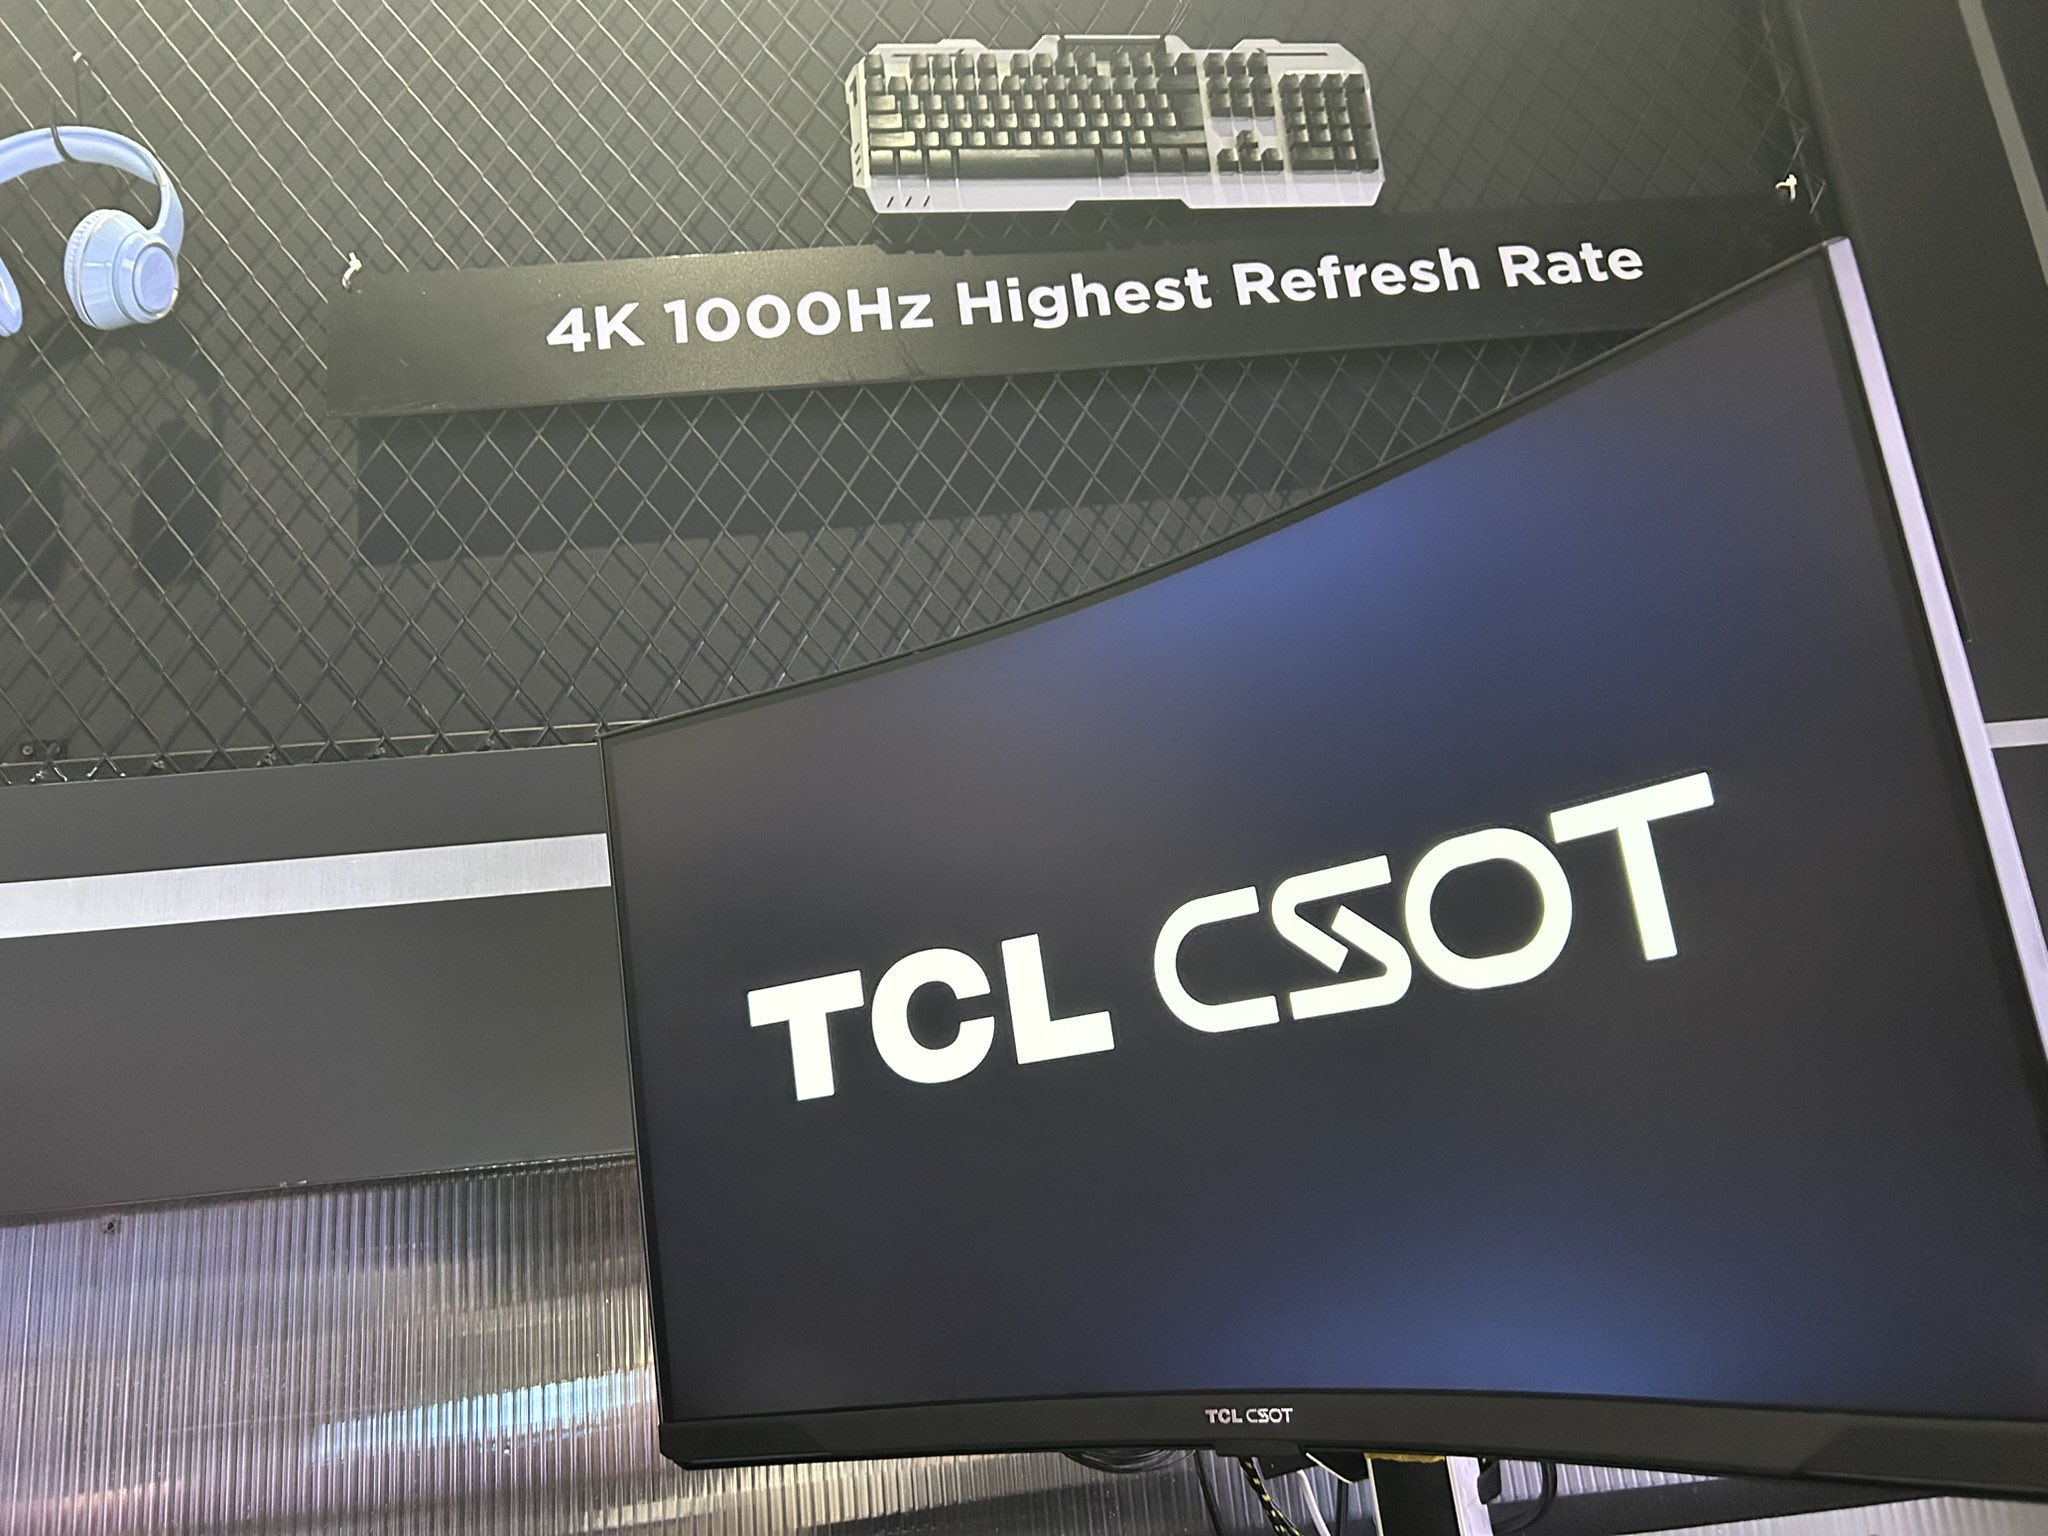 Đây là màn hình 4K 1000Hz của TCL, nhưng thực sự có ai cần tới nó?